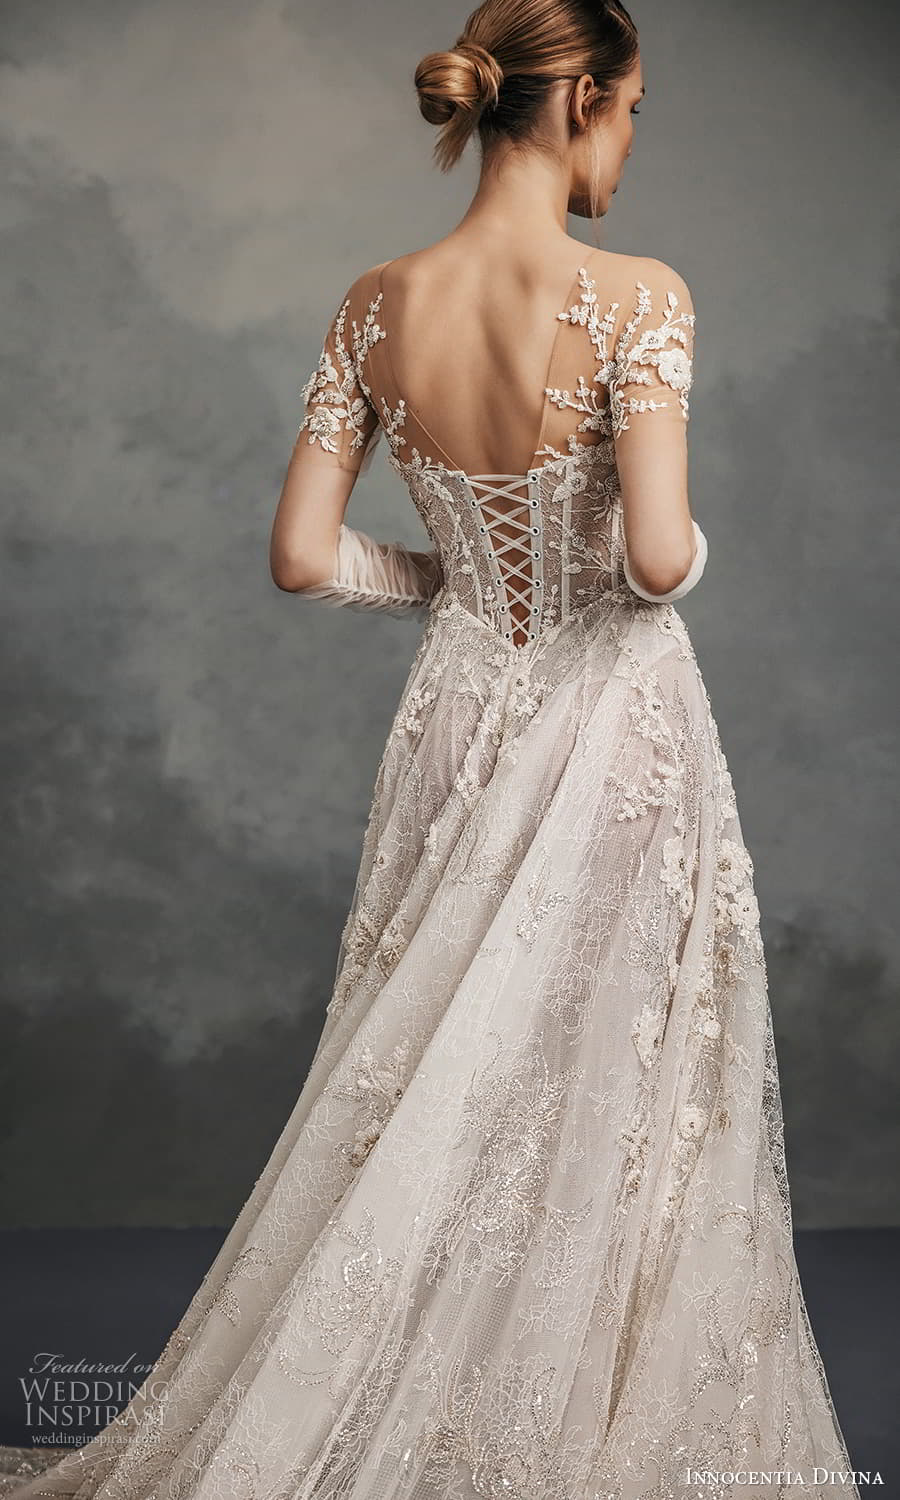 Innocentia Divina Spring 2023 Wedding Dresses — “Melodia del 